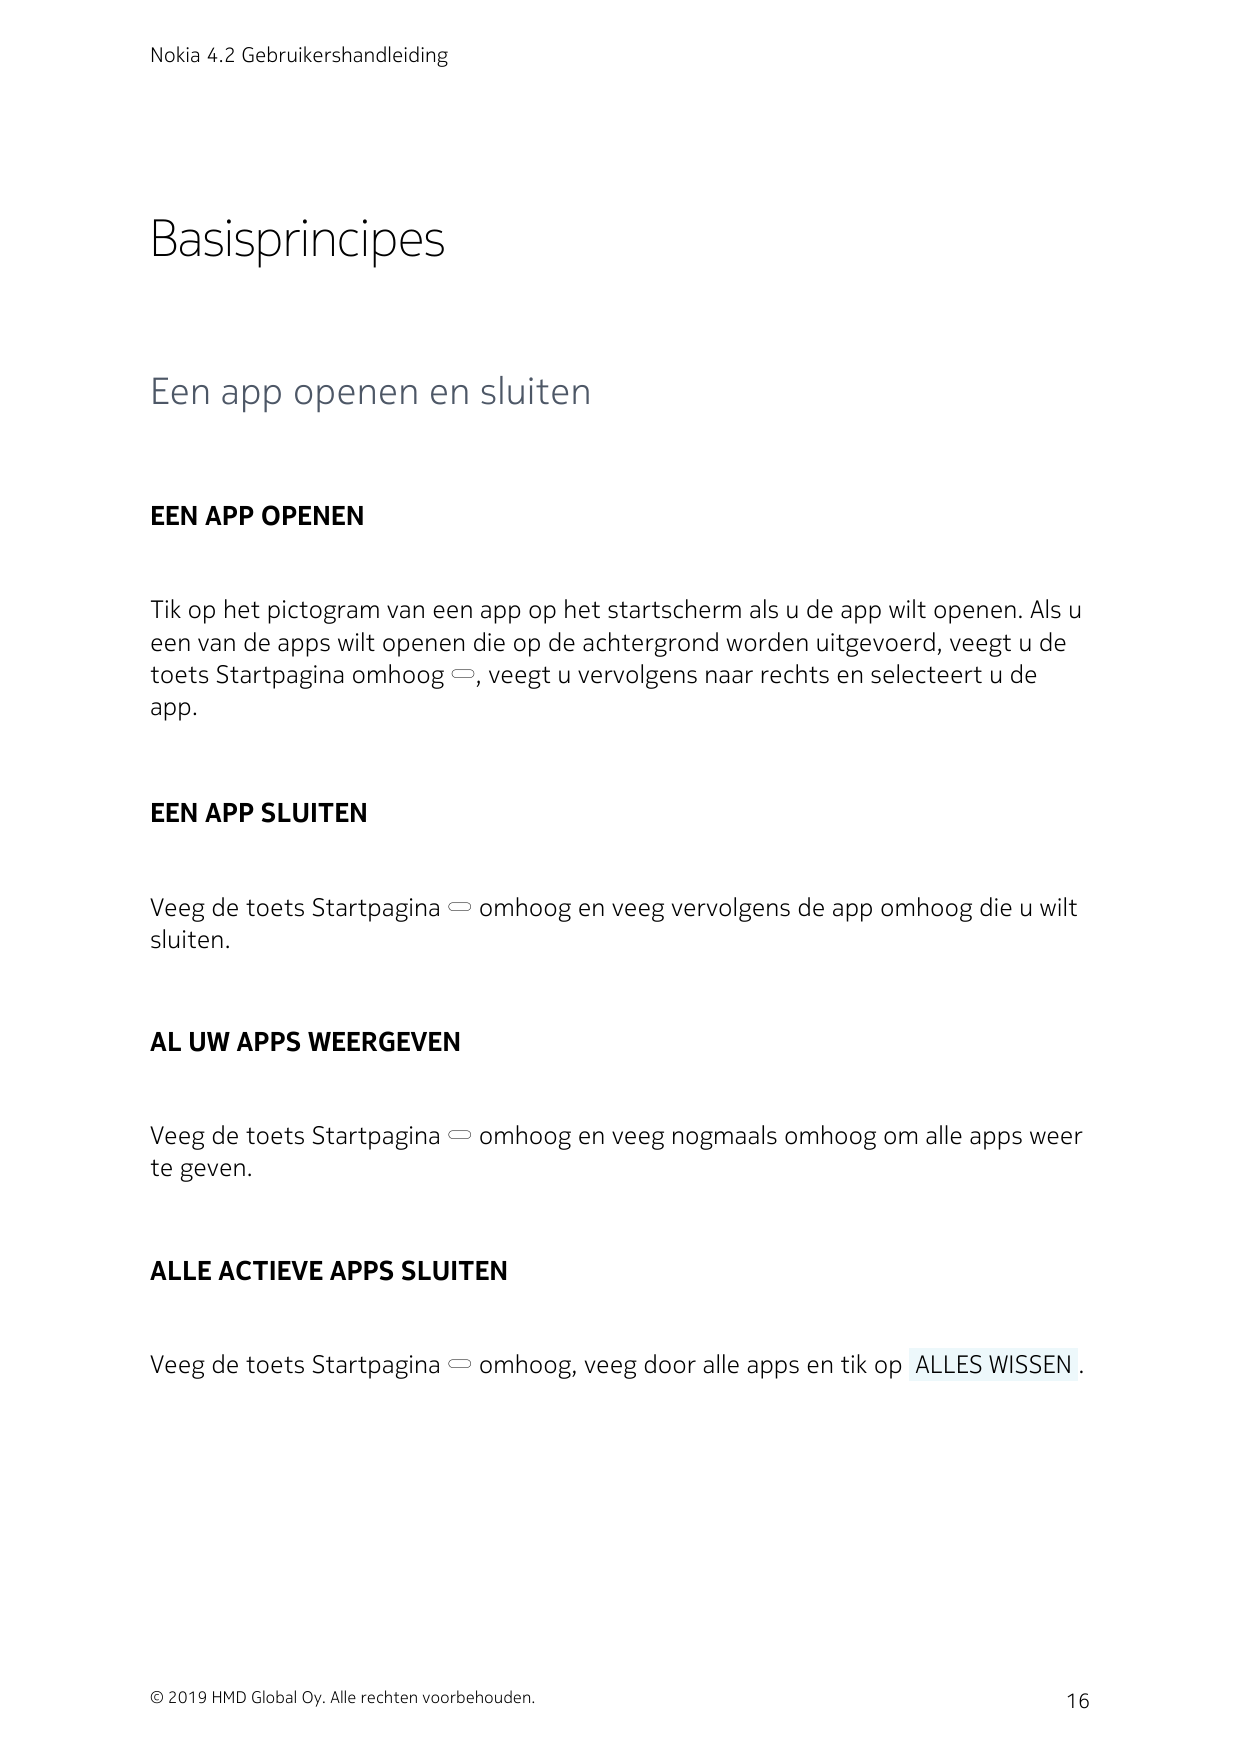 Nokia 4.2 GebruikershandleidingBasisprincipesEen app openen en sluitenEEN APP OPENENTik op het pictogram van een app op het star